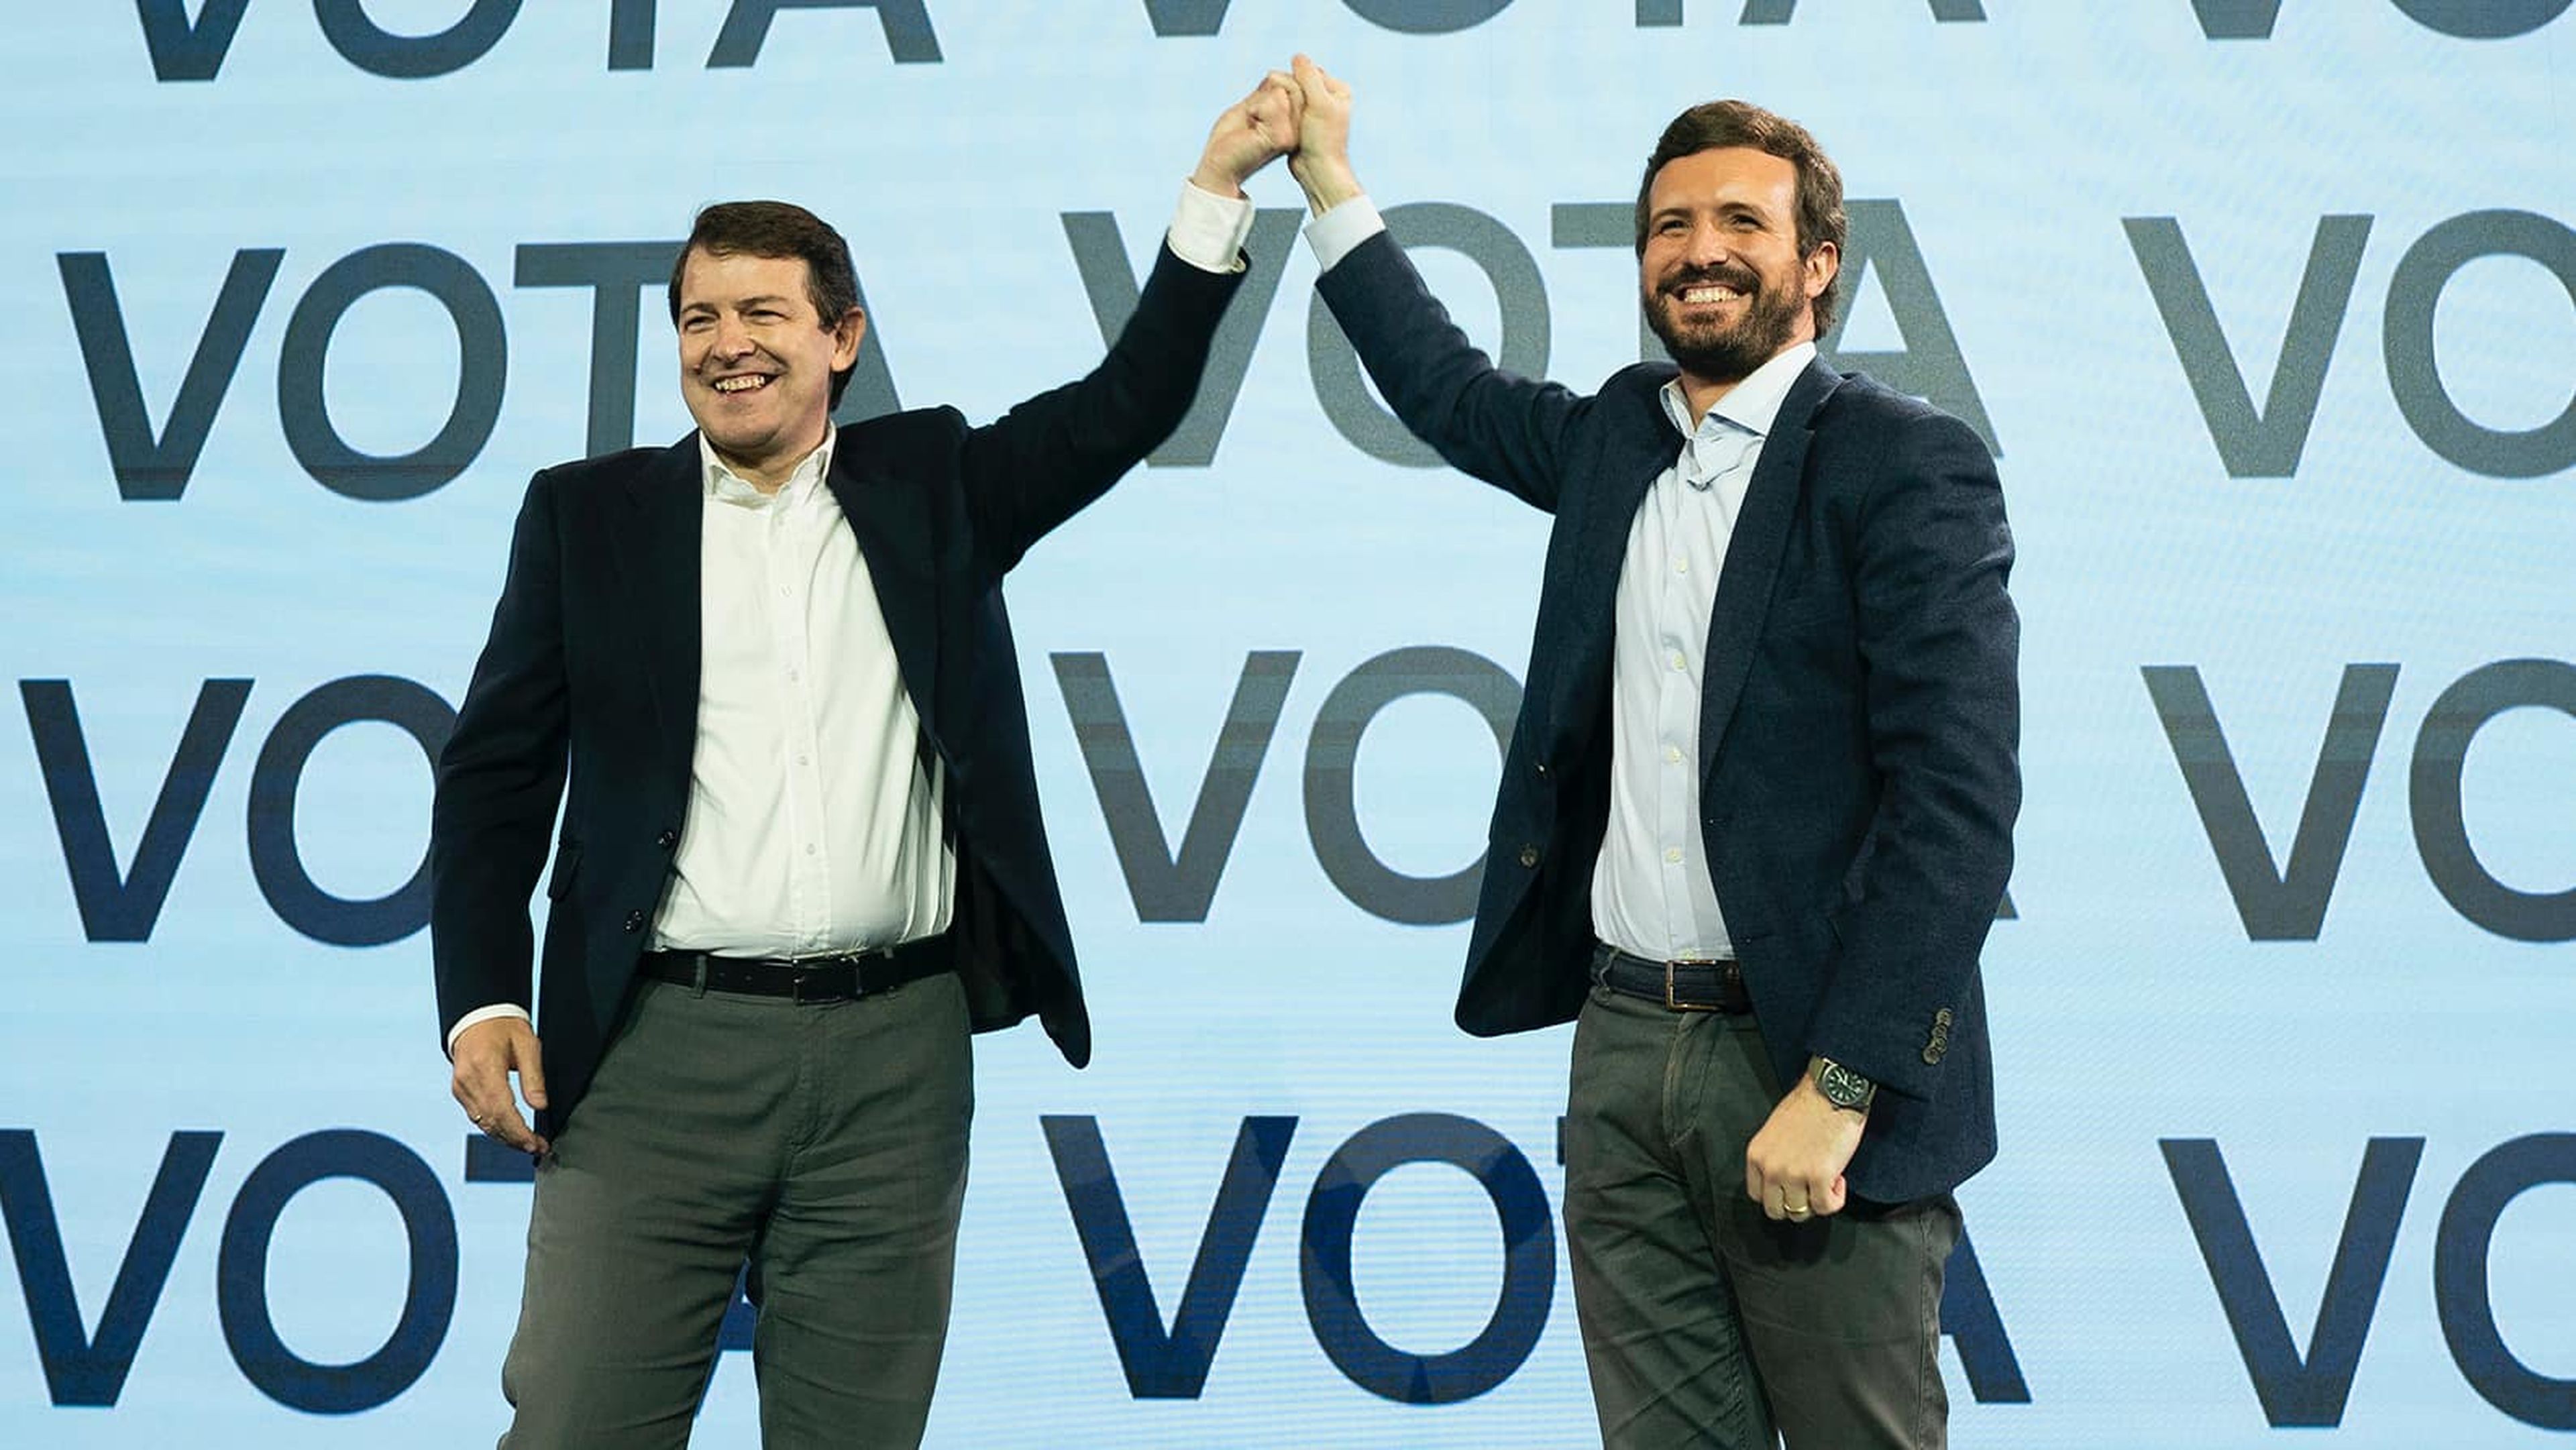 Alfonso Fernández Mañueco, candidato del PP a la presidencia de Castilla y León, junto con el líder popular, Pablo Casado.